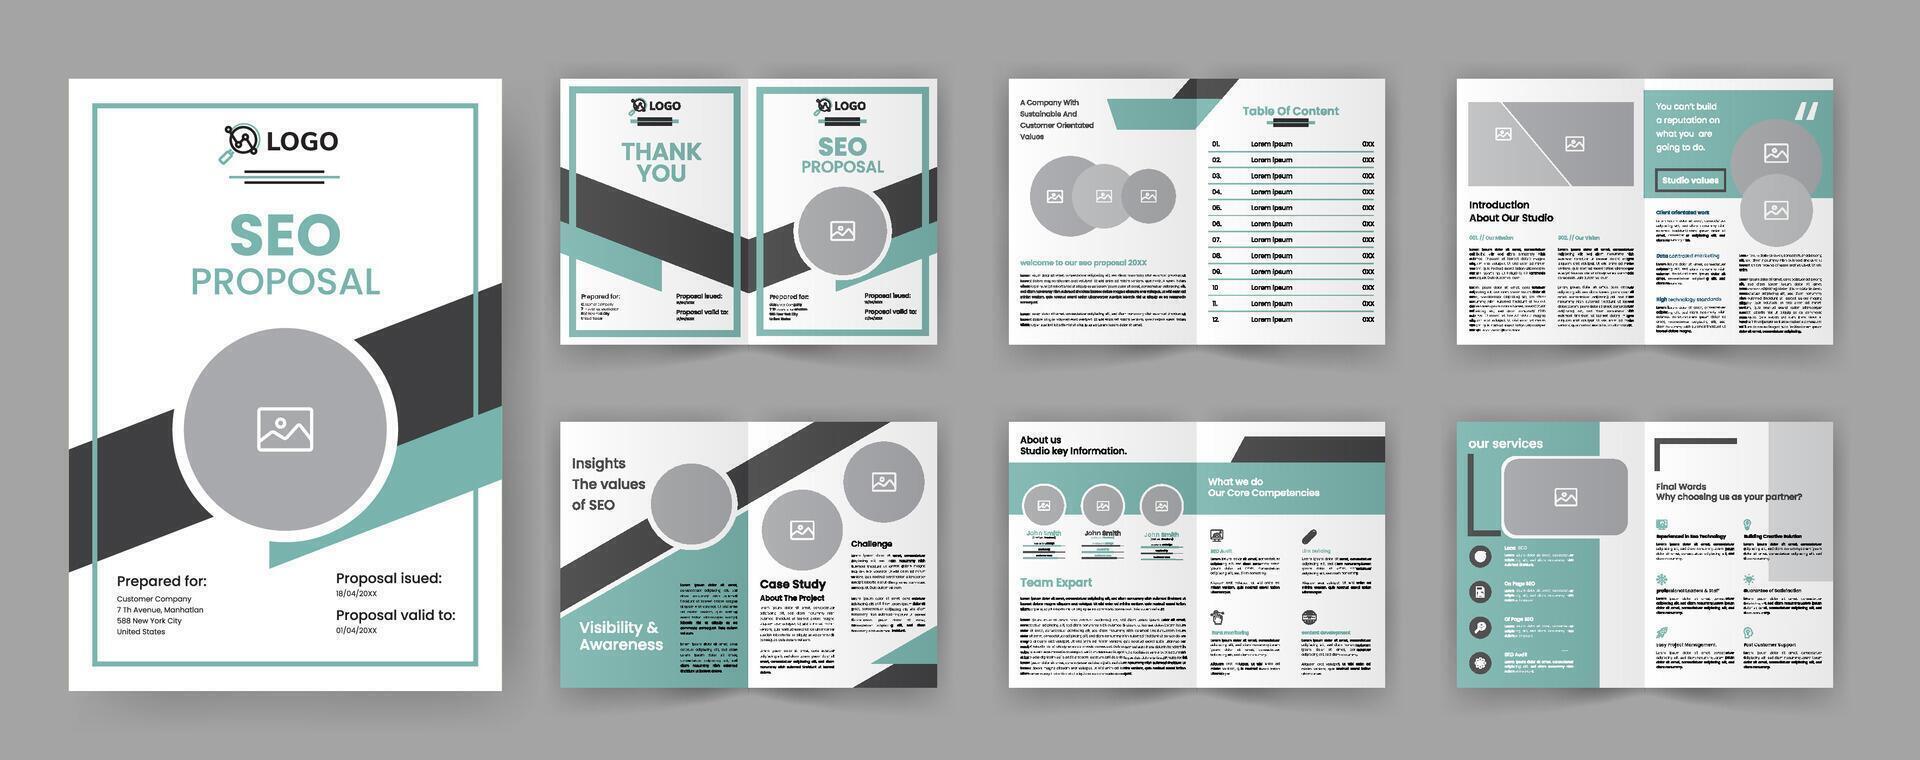 seo márketing propuesta folleto modelo para web diseño negocio vector